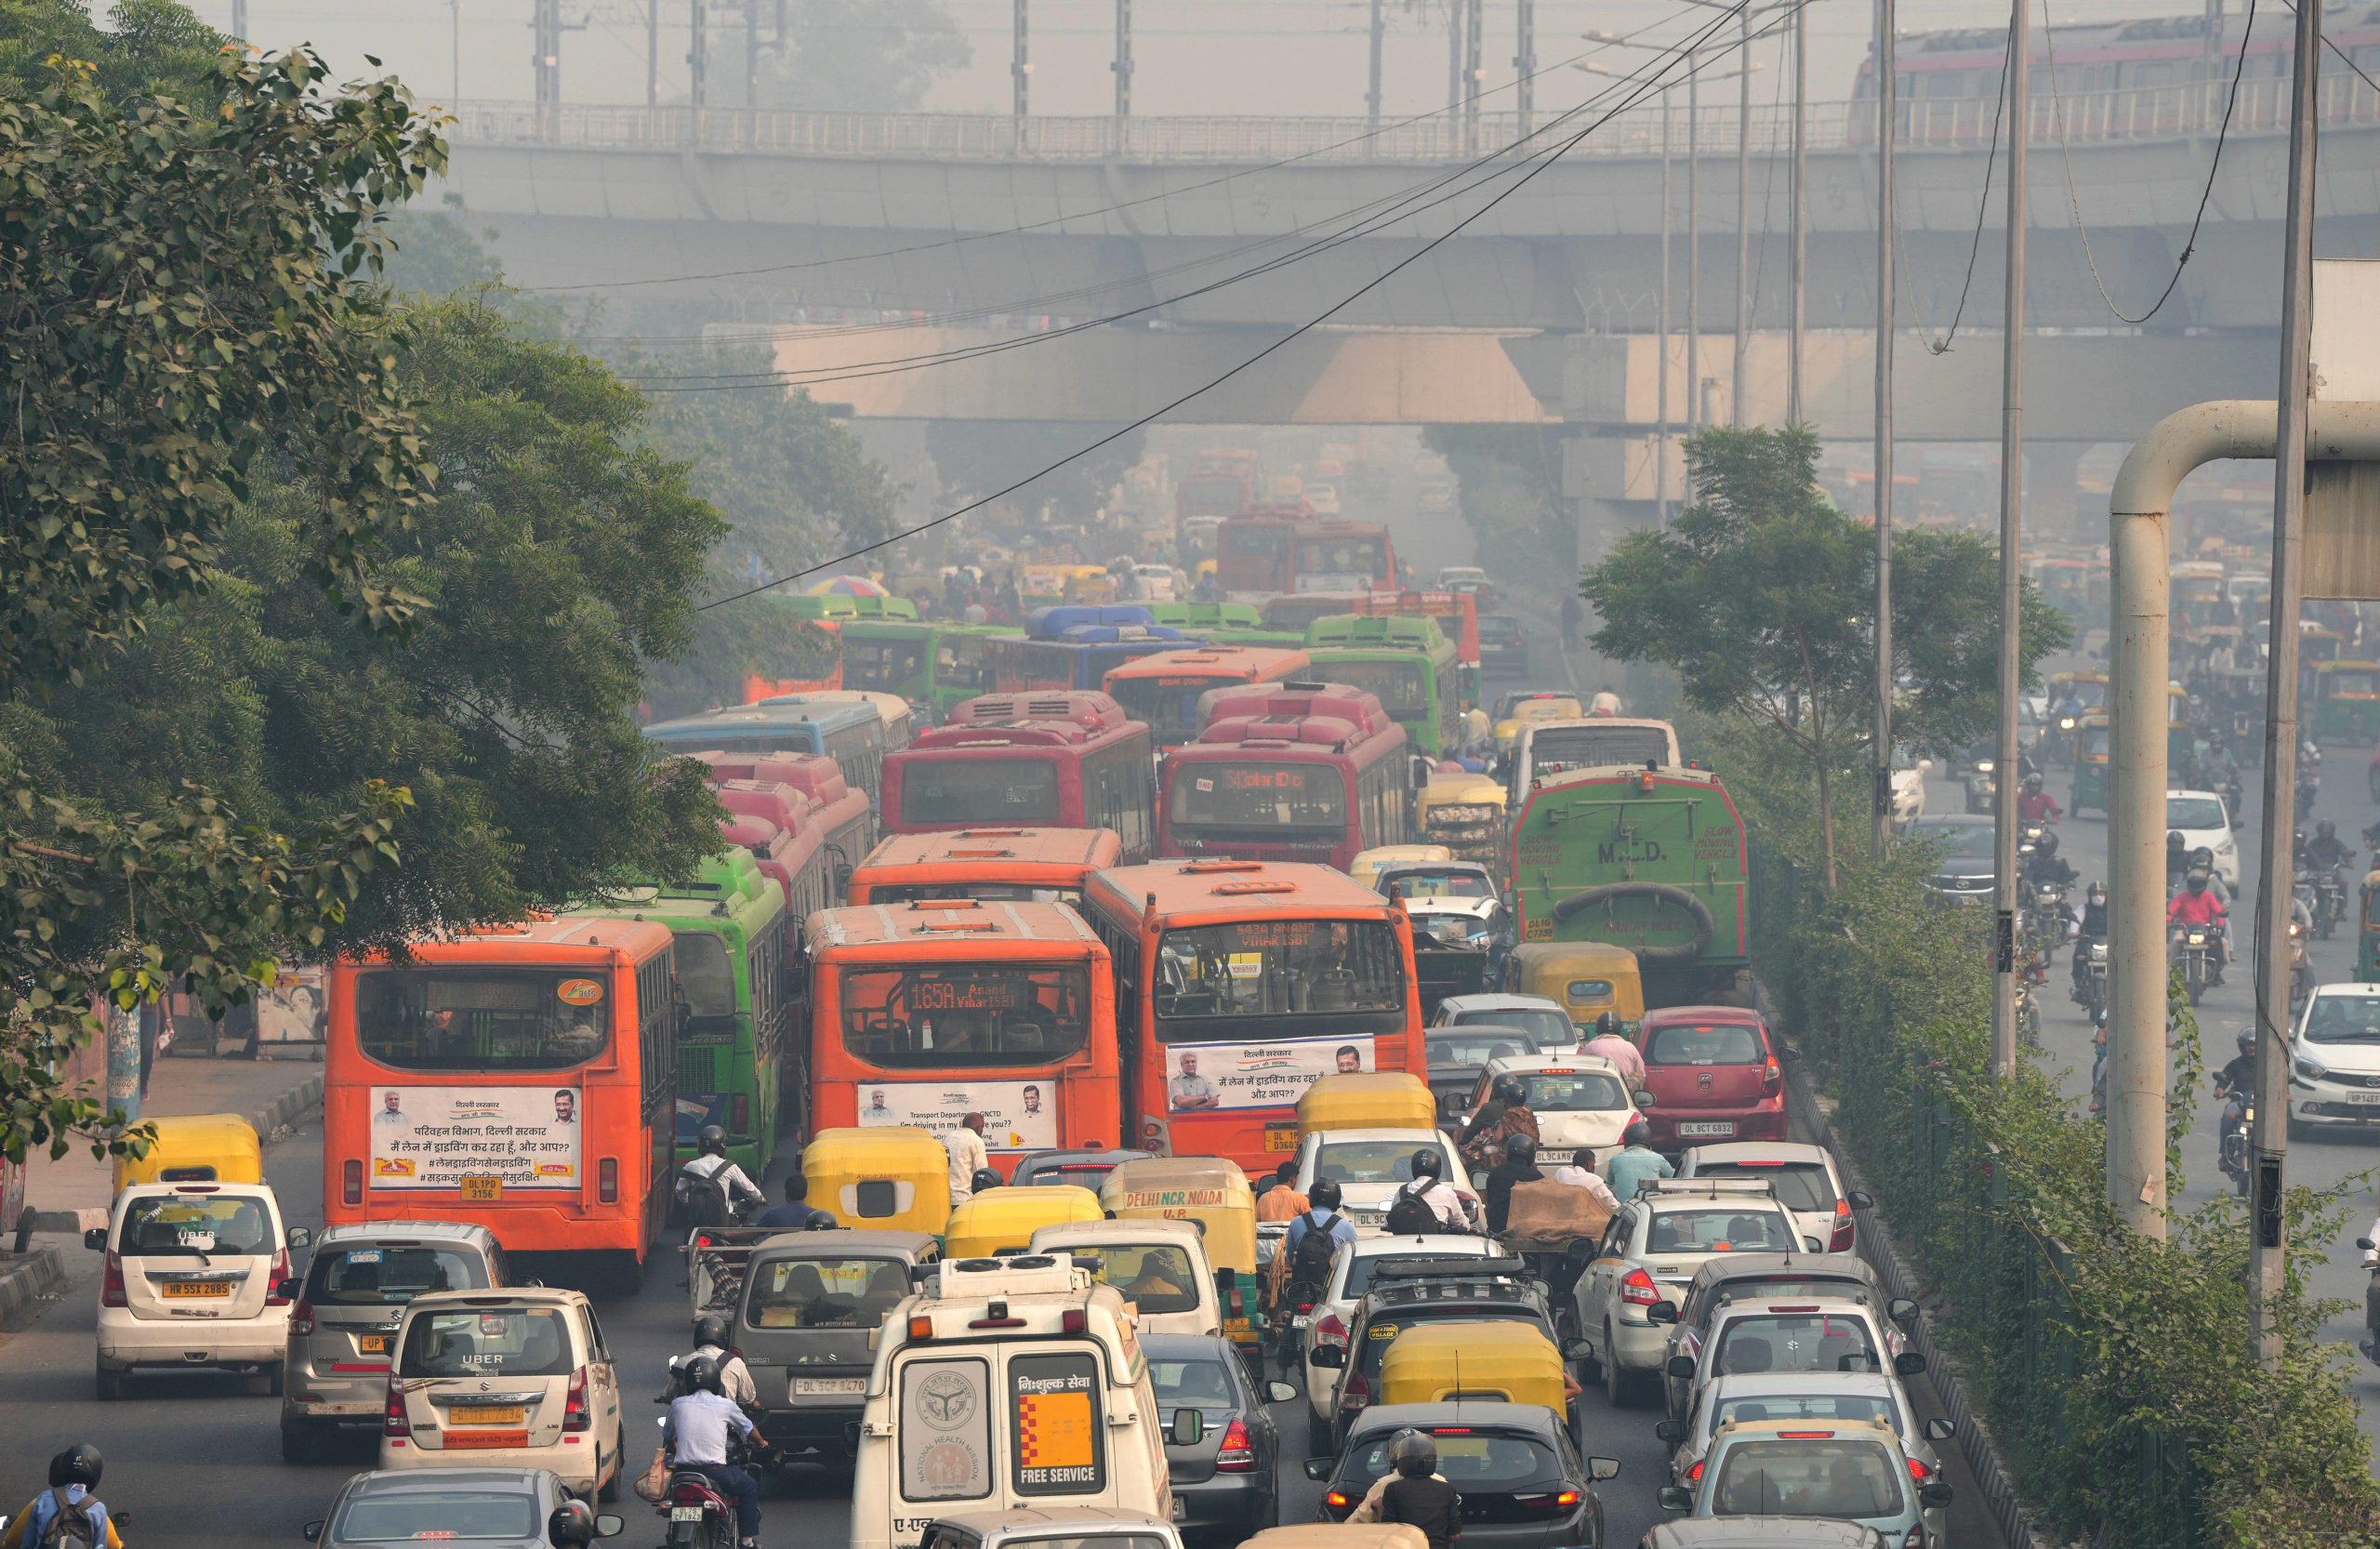 दिल्ली: बाहर से आने वाली गाड़ियों की एंट्री बंद! जानें क्या जारी हुआ है आदेश